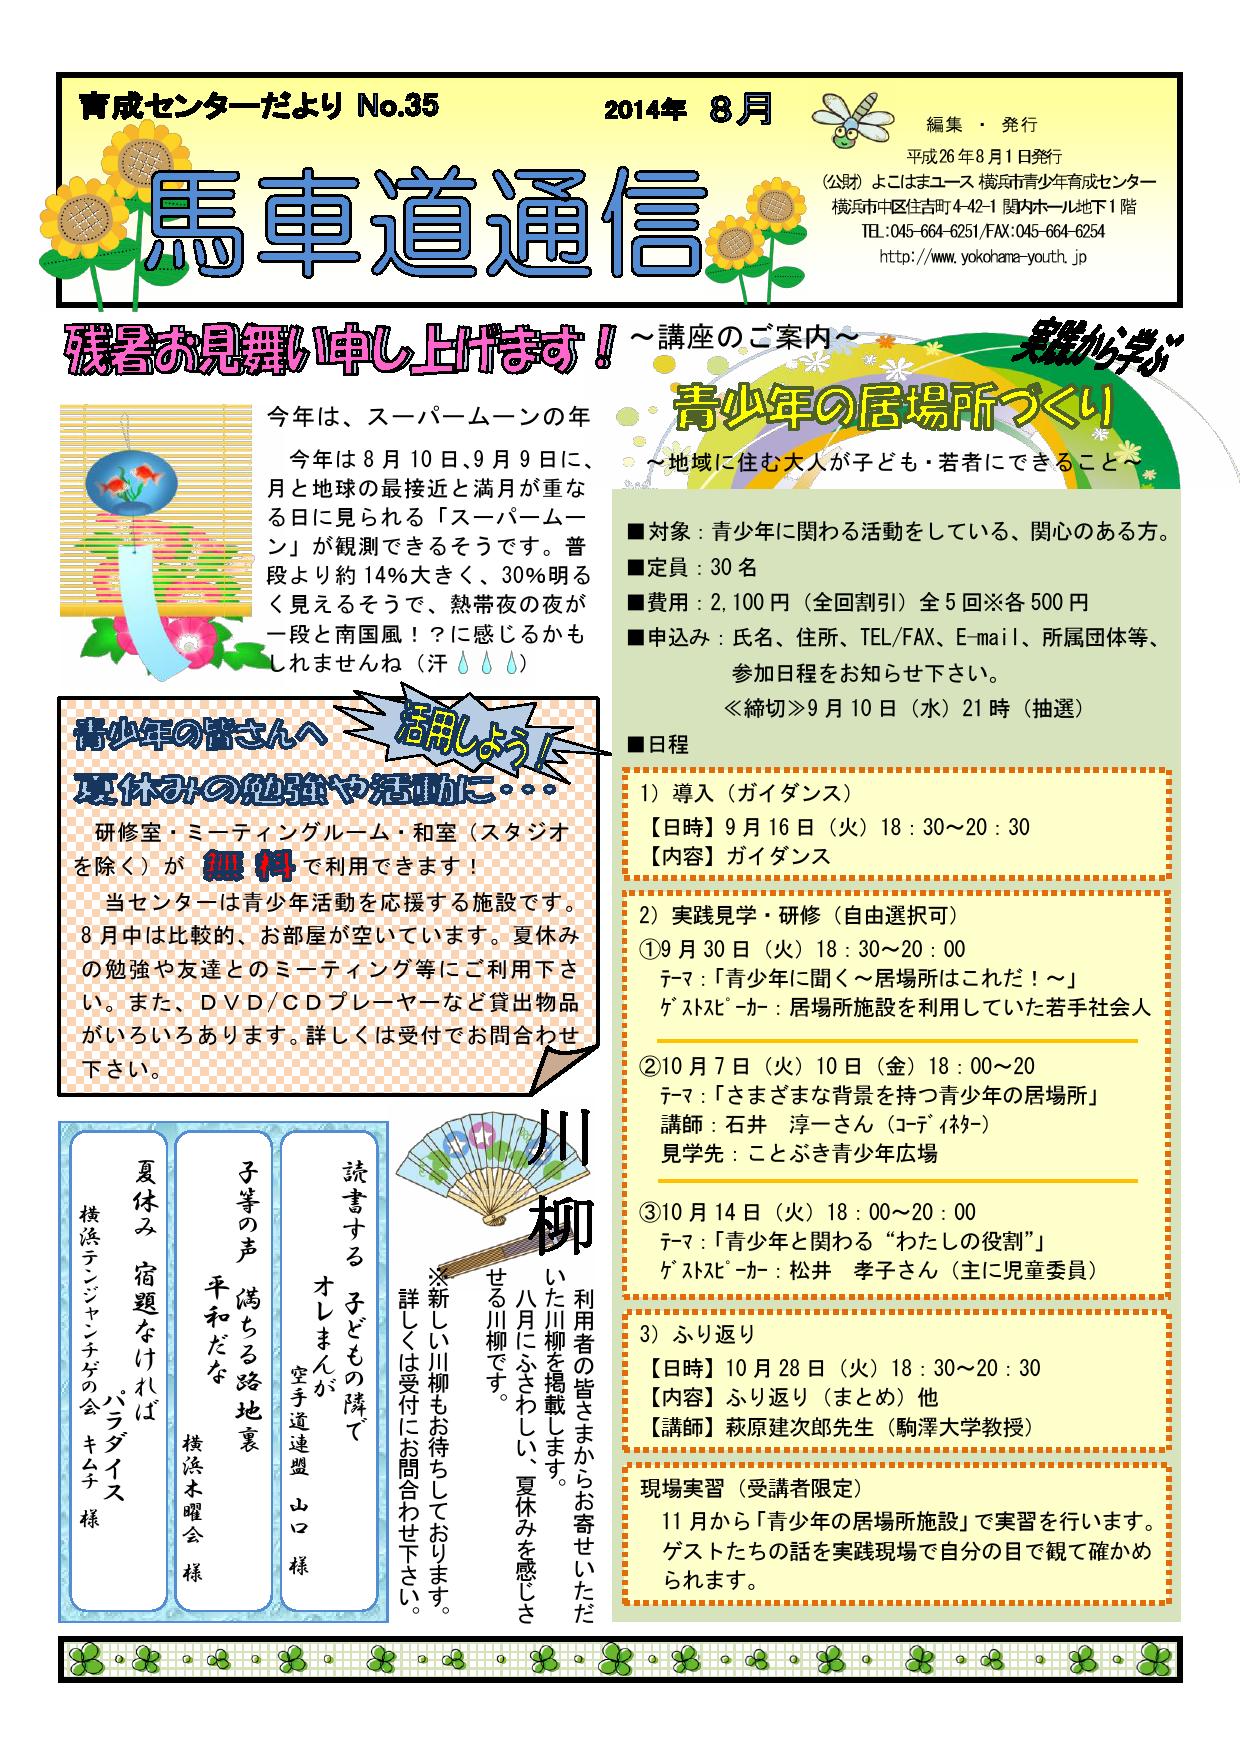 【WEB用】2014-8月号（No.36)馬車道通信